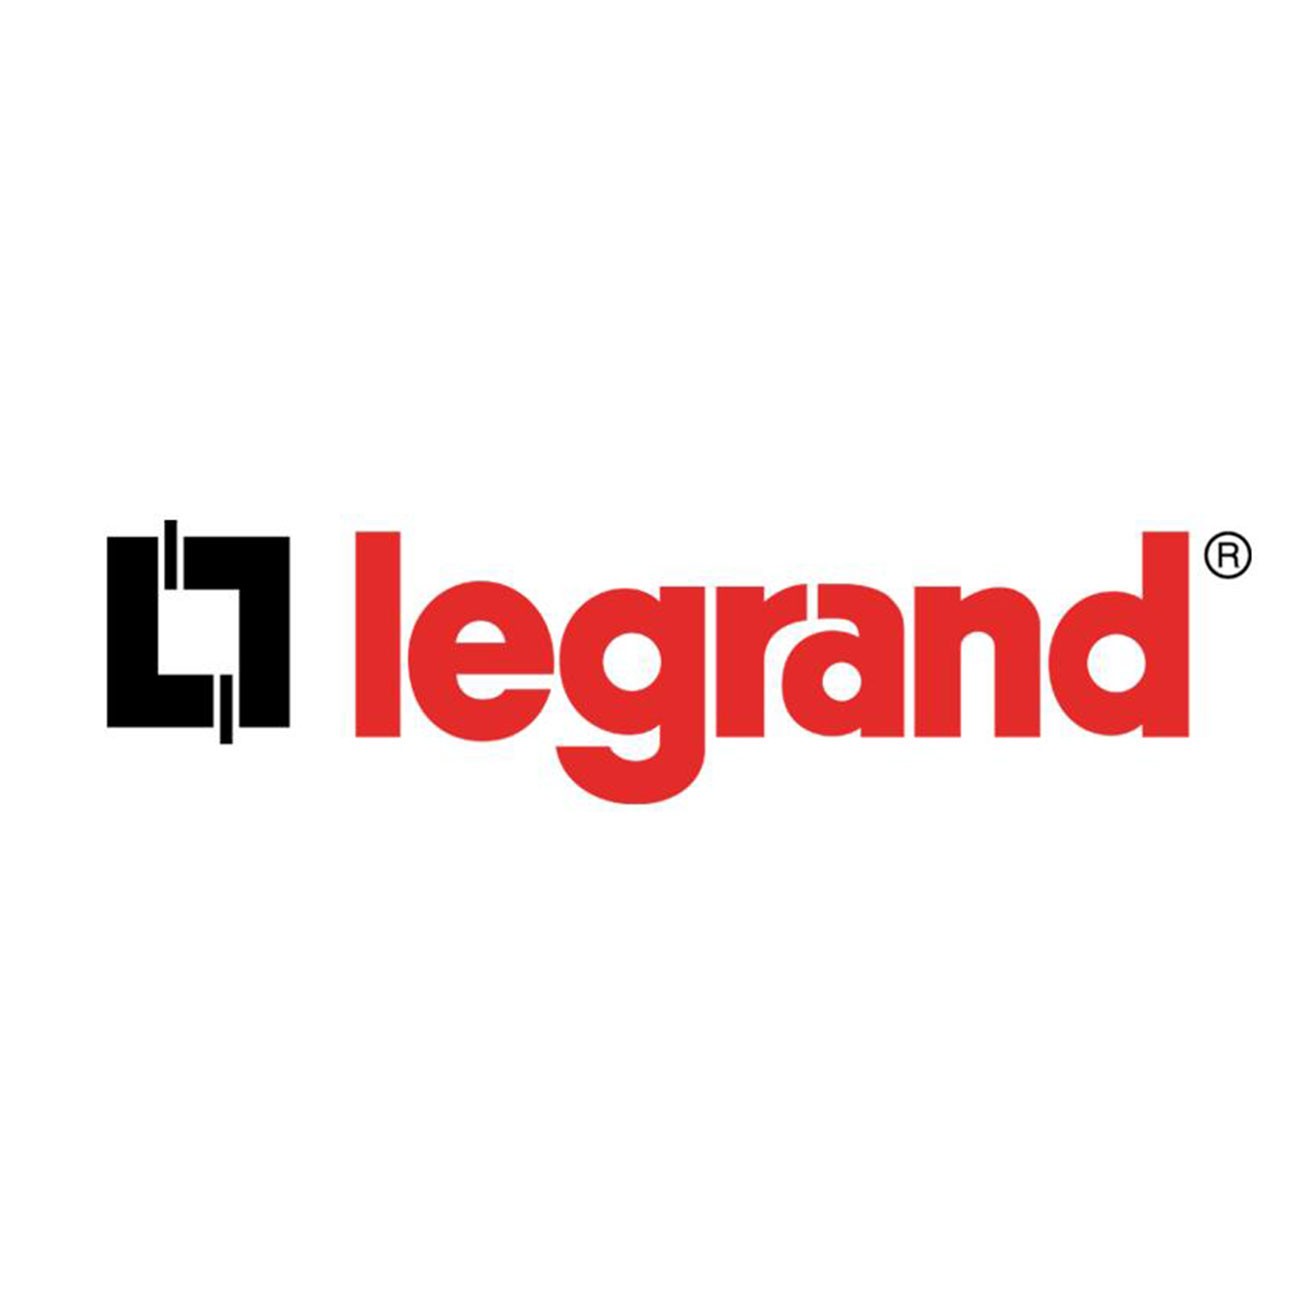 Prise de recharge Legrand Green'UP IP66 Prêt-à-poser avec compteur